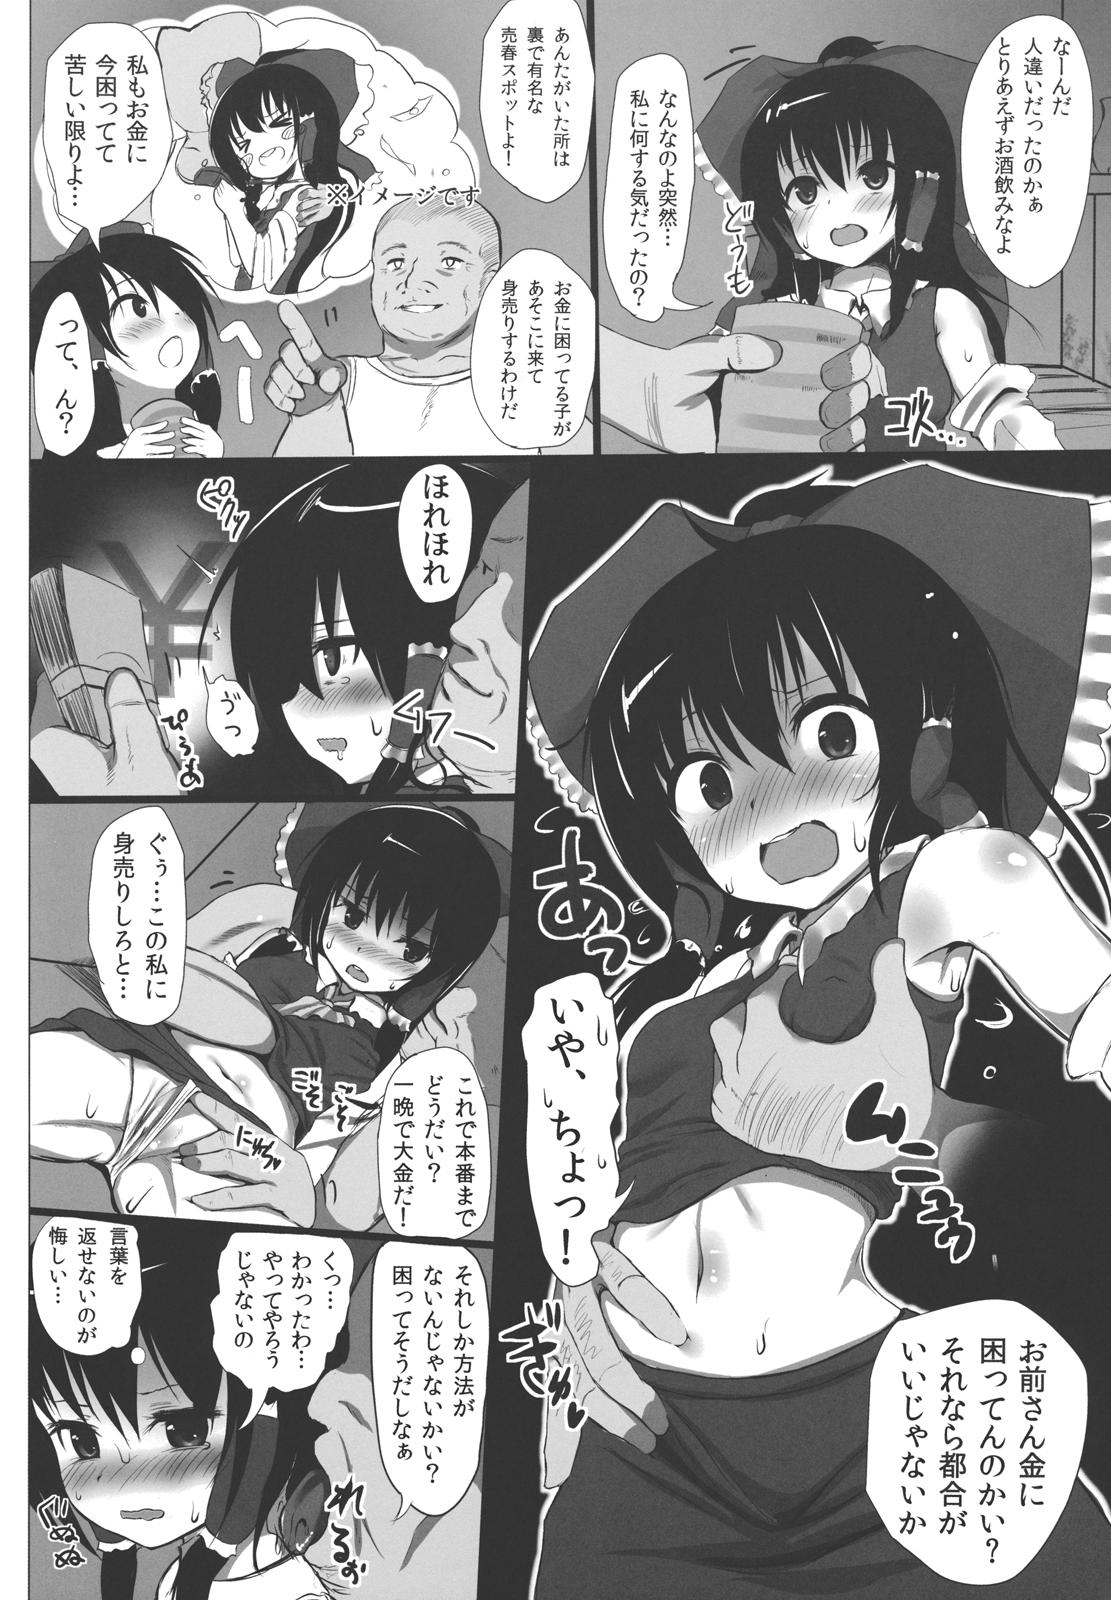 Gayclips Ano Reimu-san ni Chokusetsu Hounou Suruto...!? - Touhou project Analfucking - Page 10